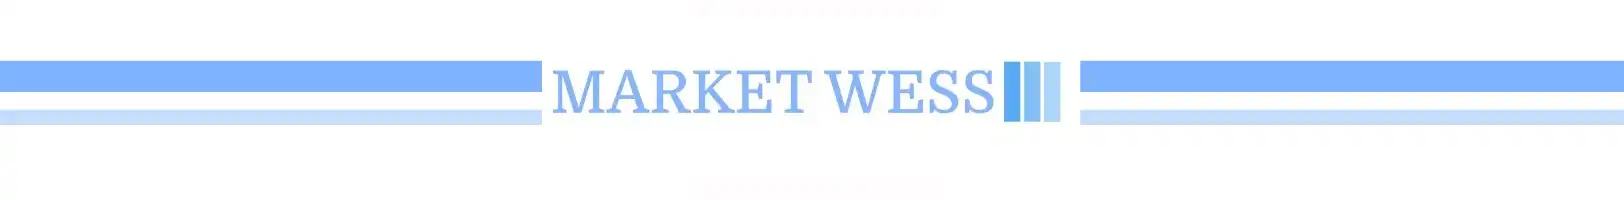 Découvrez le Plaisir de la Glisse avec MARKET WESS : Votre Destination Ultime pour les Luges d'Hiver